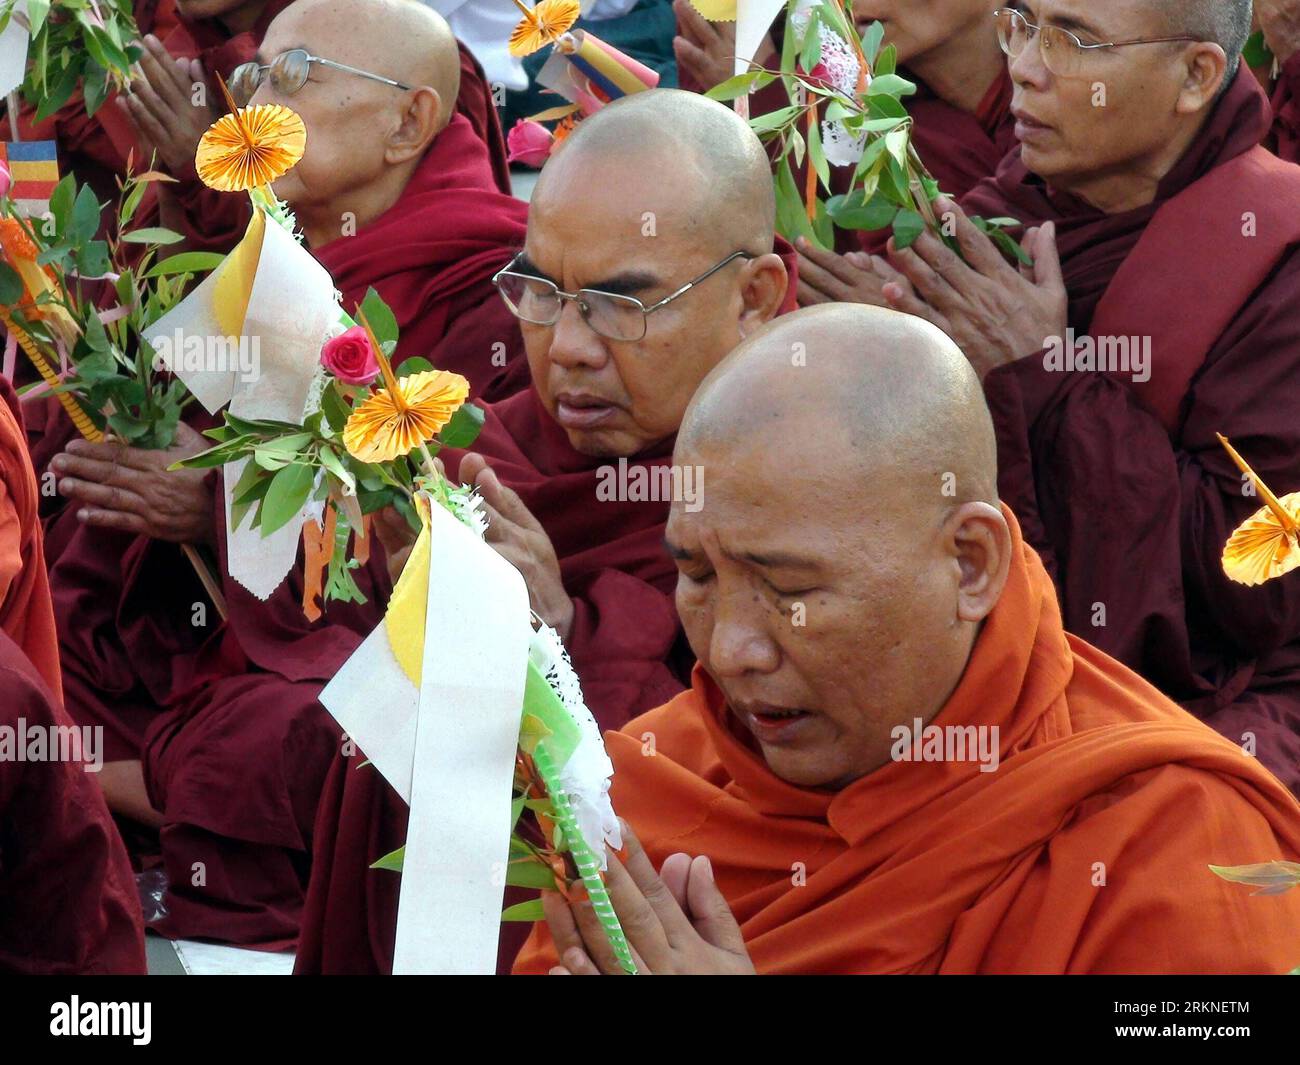 Bildnummer : 57107053 Datum : 25.02.2012 Copyright : imago/Xinhua (120225) -- YANGON, 25 février 2012 (Xinhua) -- Un total de 2 600 moines vénérables récitent un sutra à la pagode Shwedagon pour marquer le 2600e anniversaire de la célèbre pagode Shwedagon à Yangon, Myanmar, le 25 février 2012. (Xinhua/U Aung) (dtf) MYANMAR-YANGON-SHWEDAGON PAGODE-2,600TH ANNIVERSAIRE-CÉLÉBRATION PUBLICATIONxNOTxINxCHN Gesellschaft religion Buddhismus Pagode Jubiläum Jahrestag 2600 Tempel Mönch xns x0x 2012 quer 57107053 Date 25 02 2012 Copyright Imago XINHUA Yangon février 25 2012 XINHUA un total de 2 600 moines Reci Banque D'Images